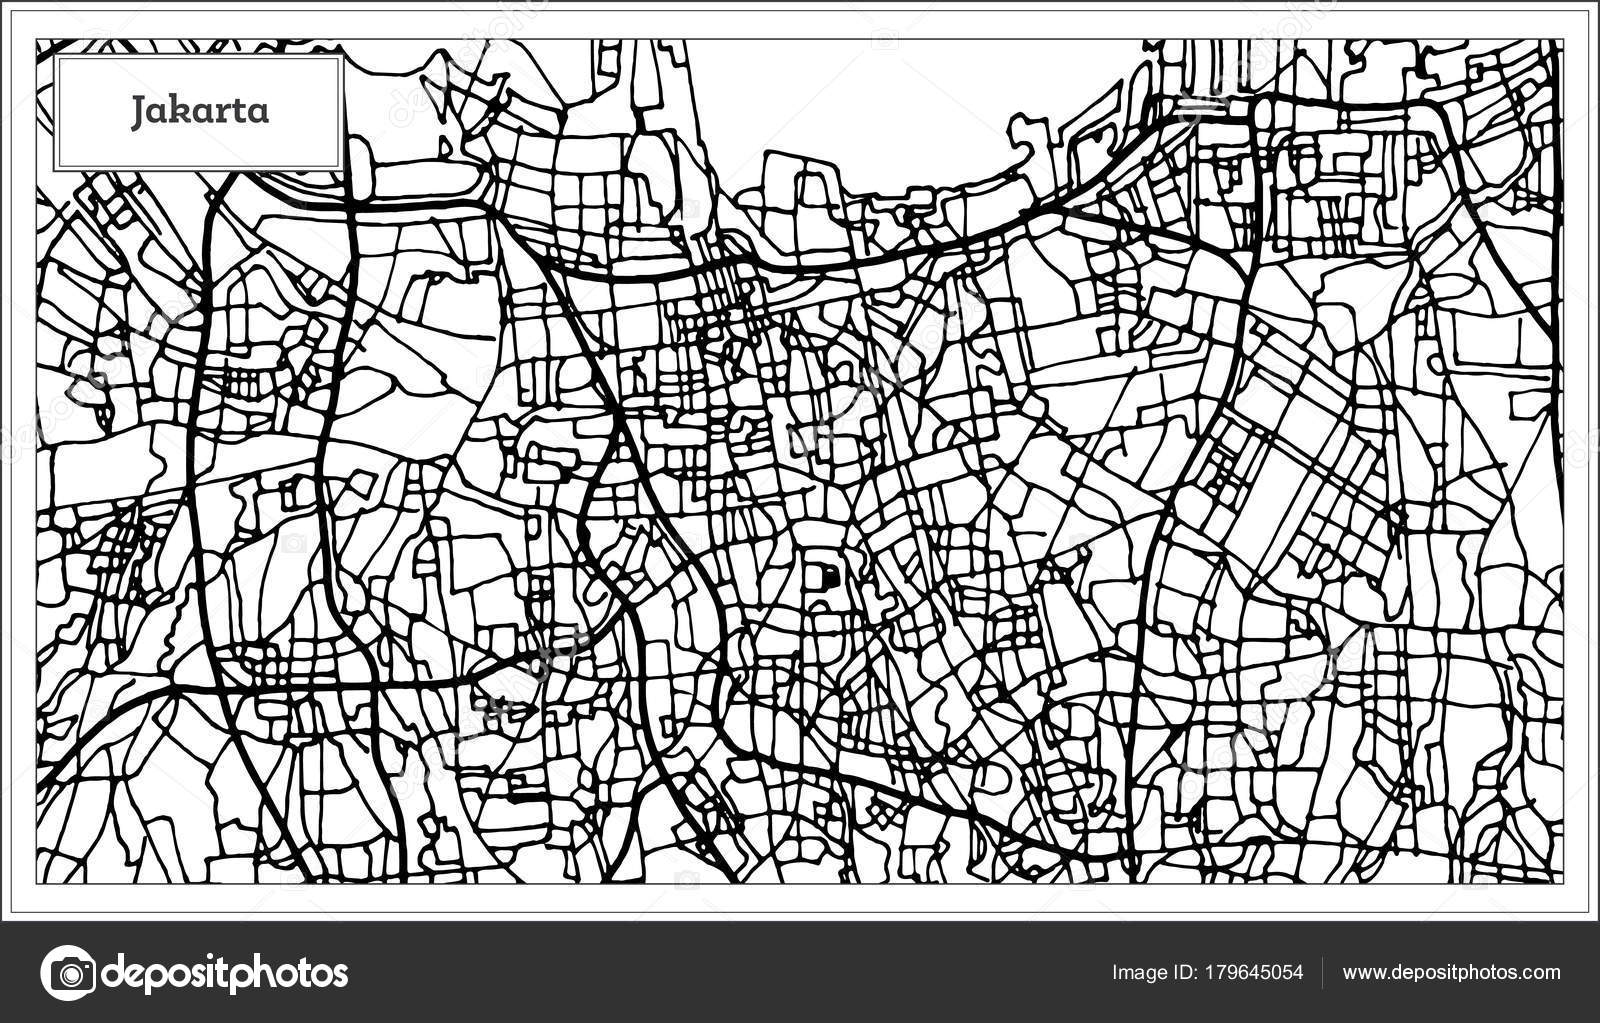  Carte  de  la ville de  Jakarta  Indon sie en noir et blanc 